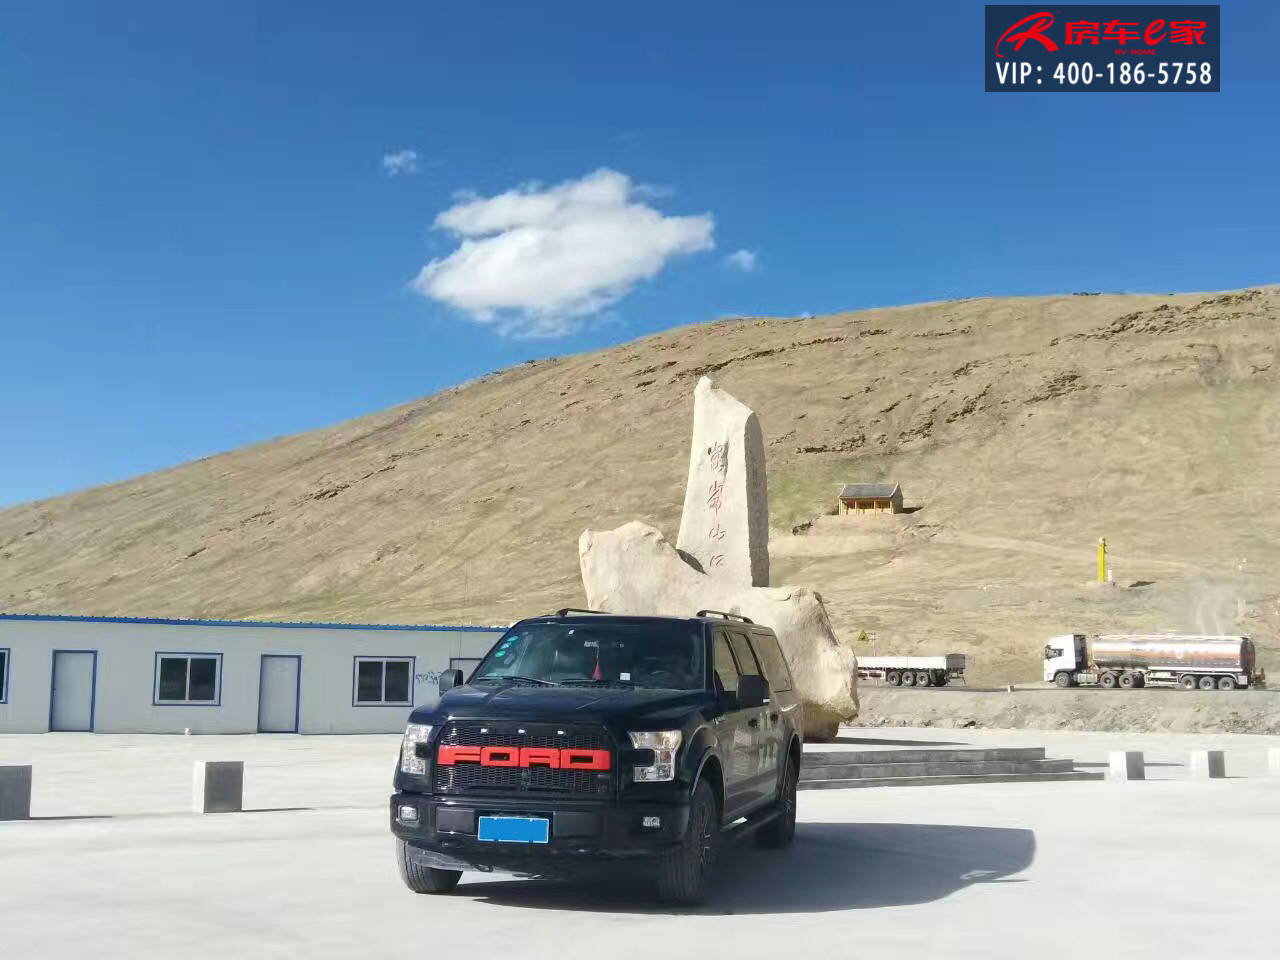 F150福特勇猛者自驾西藏万里行 以性能凌驾